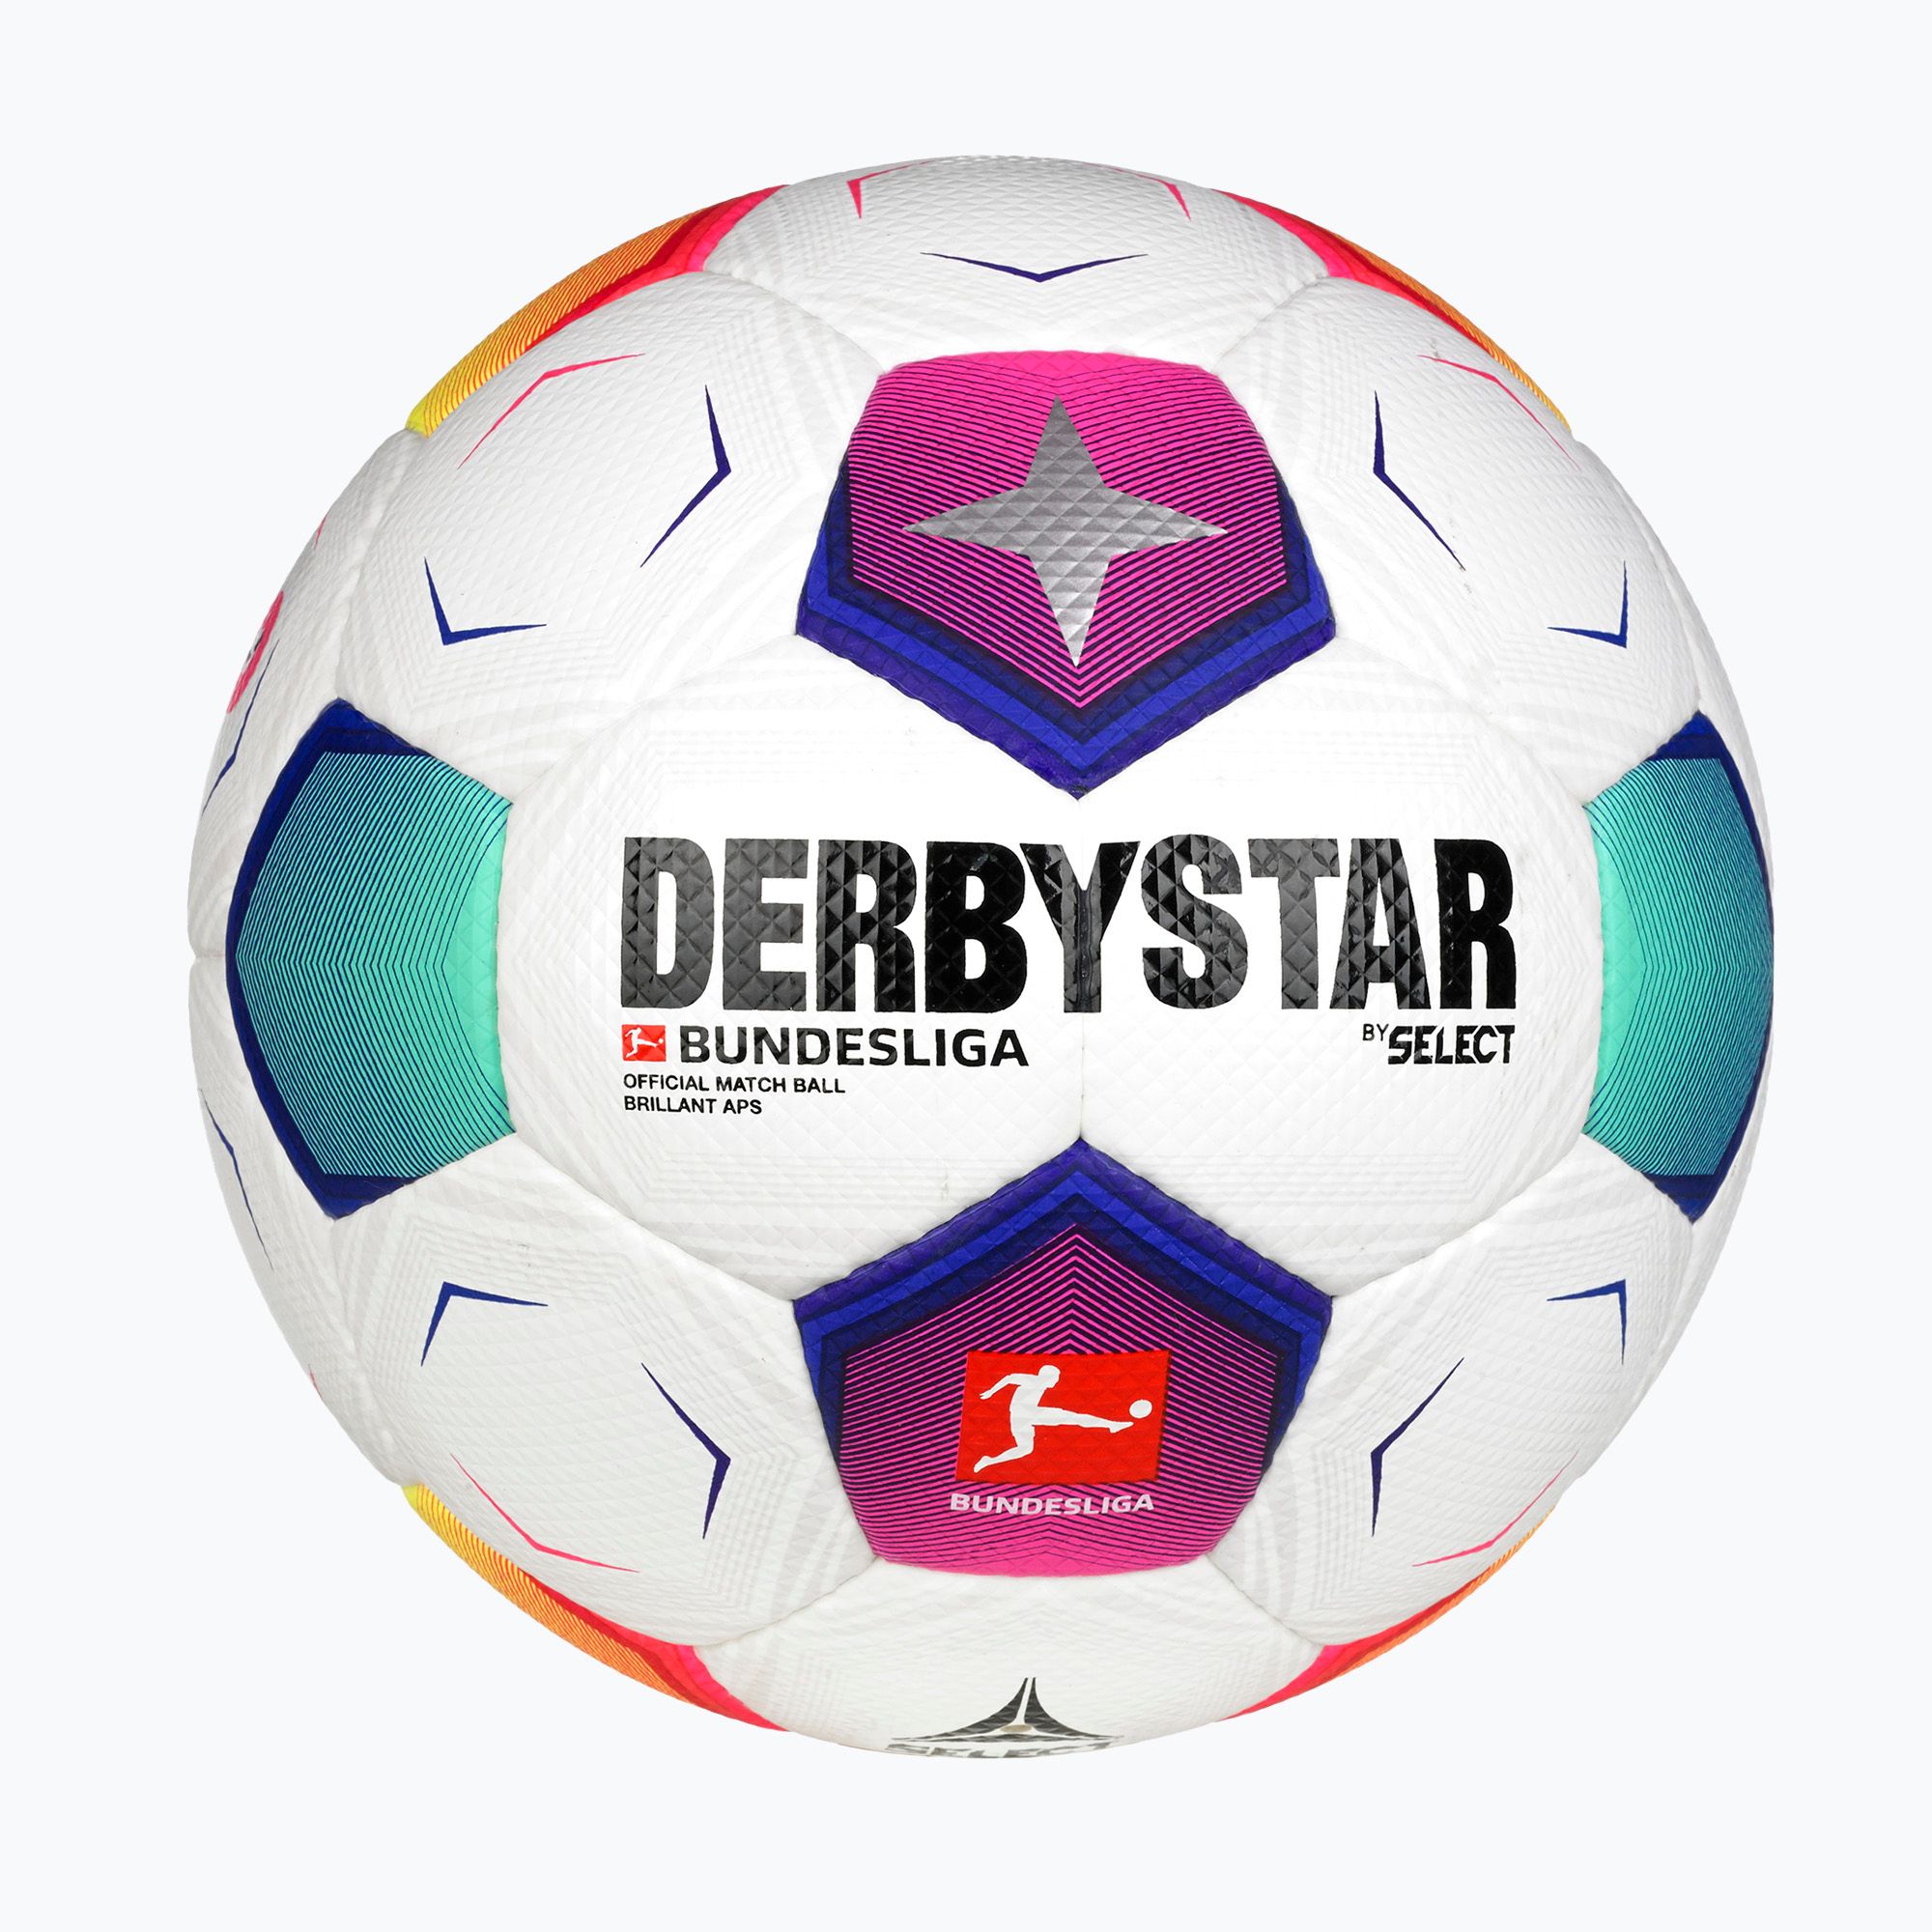 Piłka do piłki nożnej DERBYSTAR Bundesliga Brillant APS v23 multicolor rozmiar 5